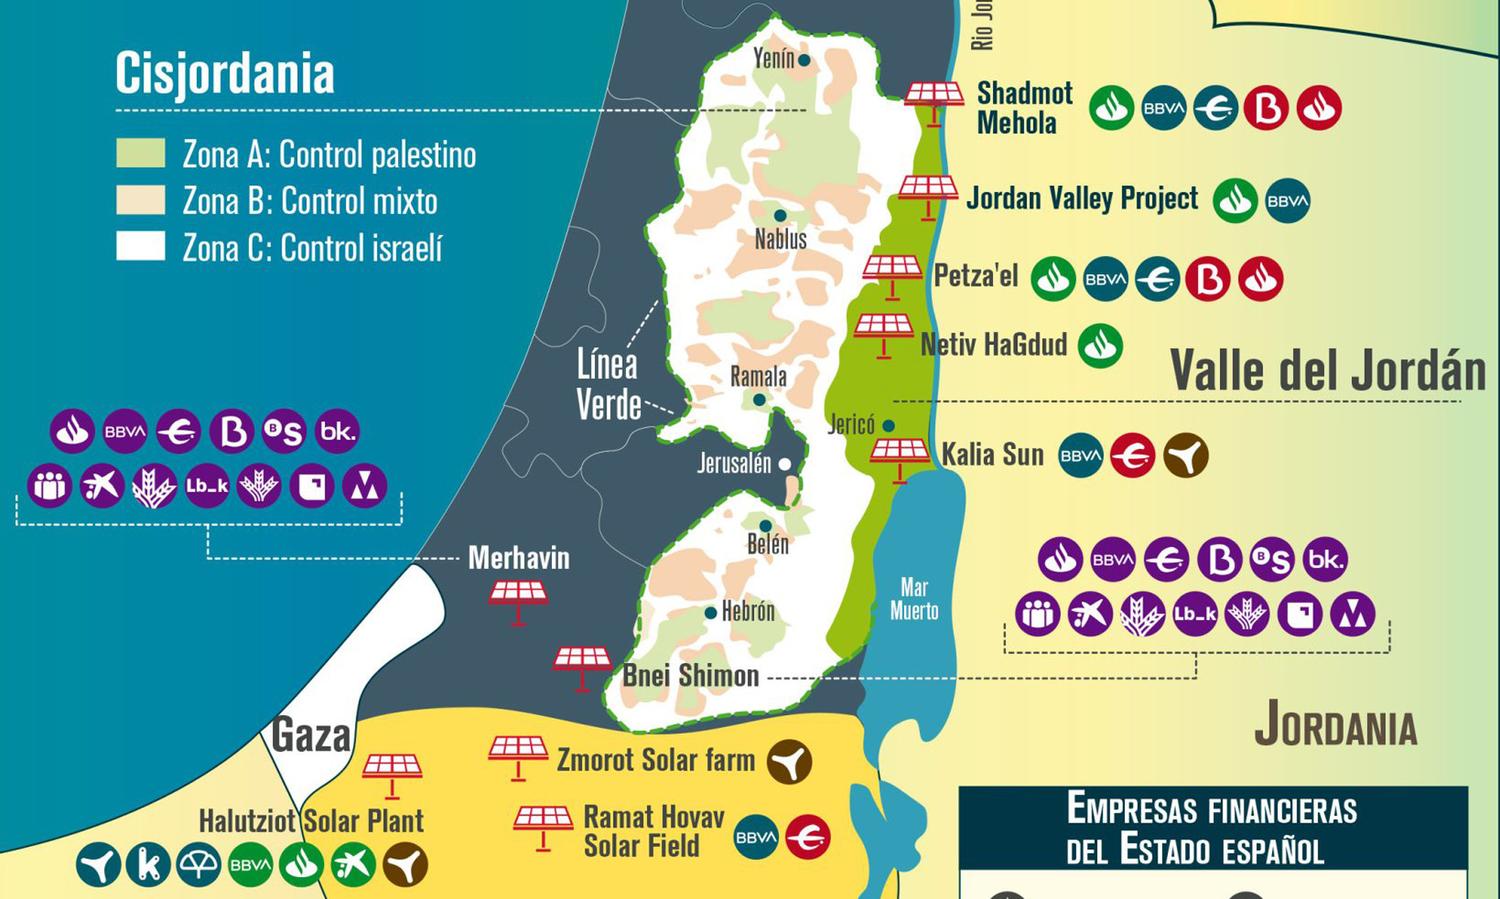 Empresas españolas en territorios ocupados palestinos